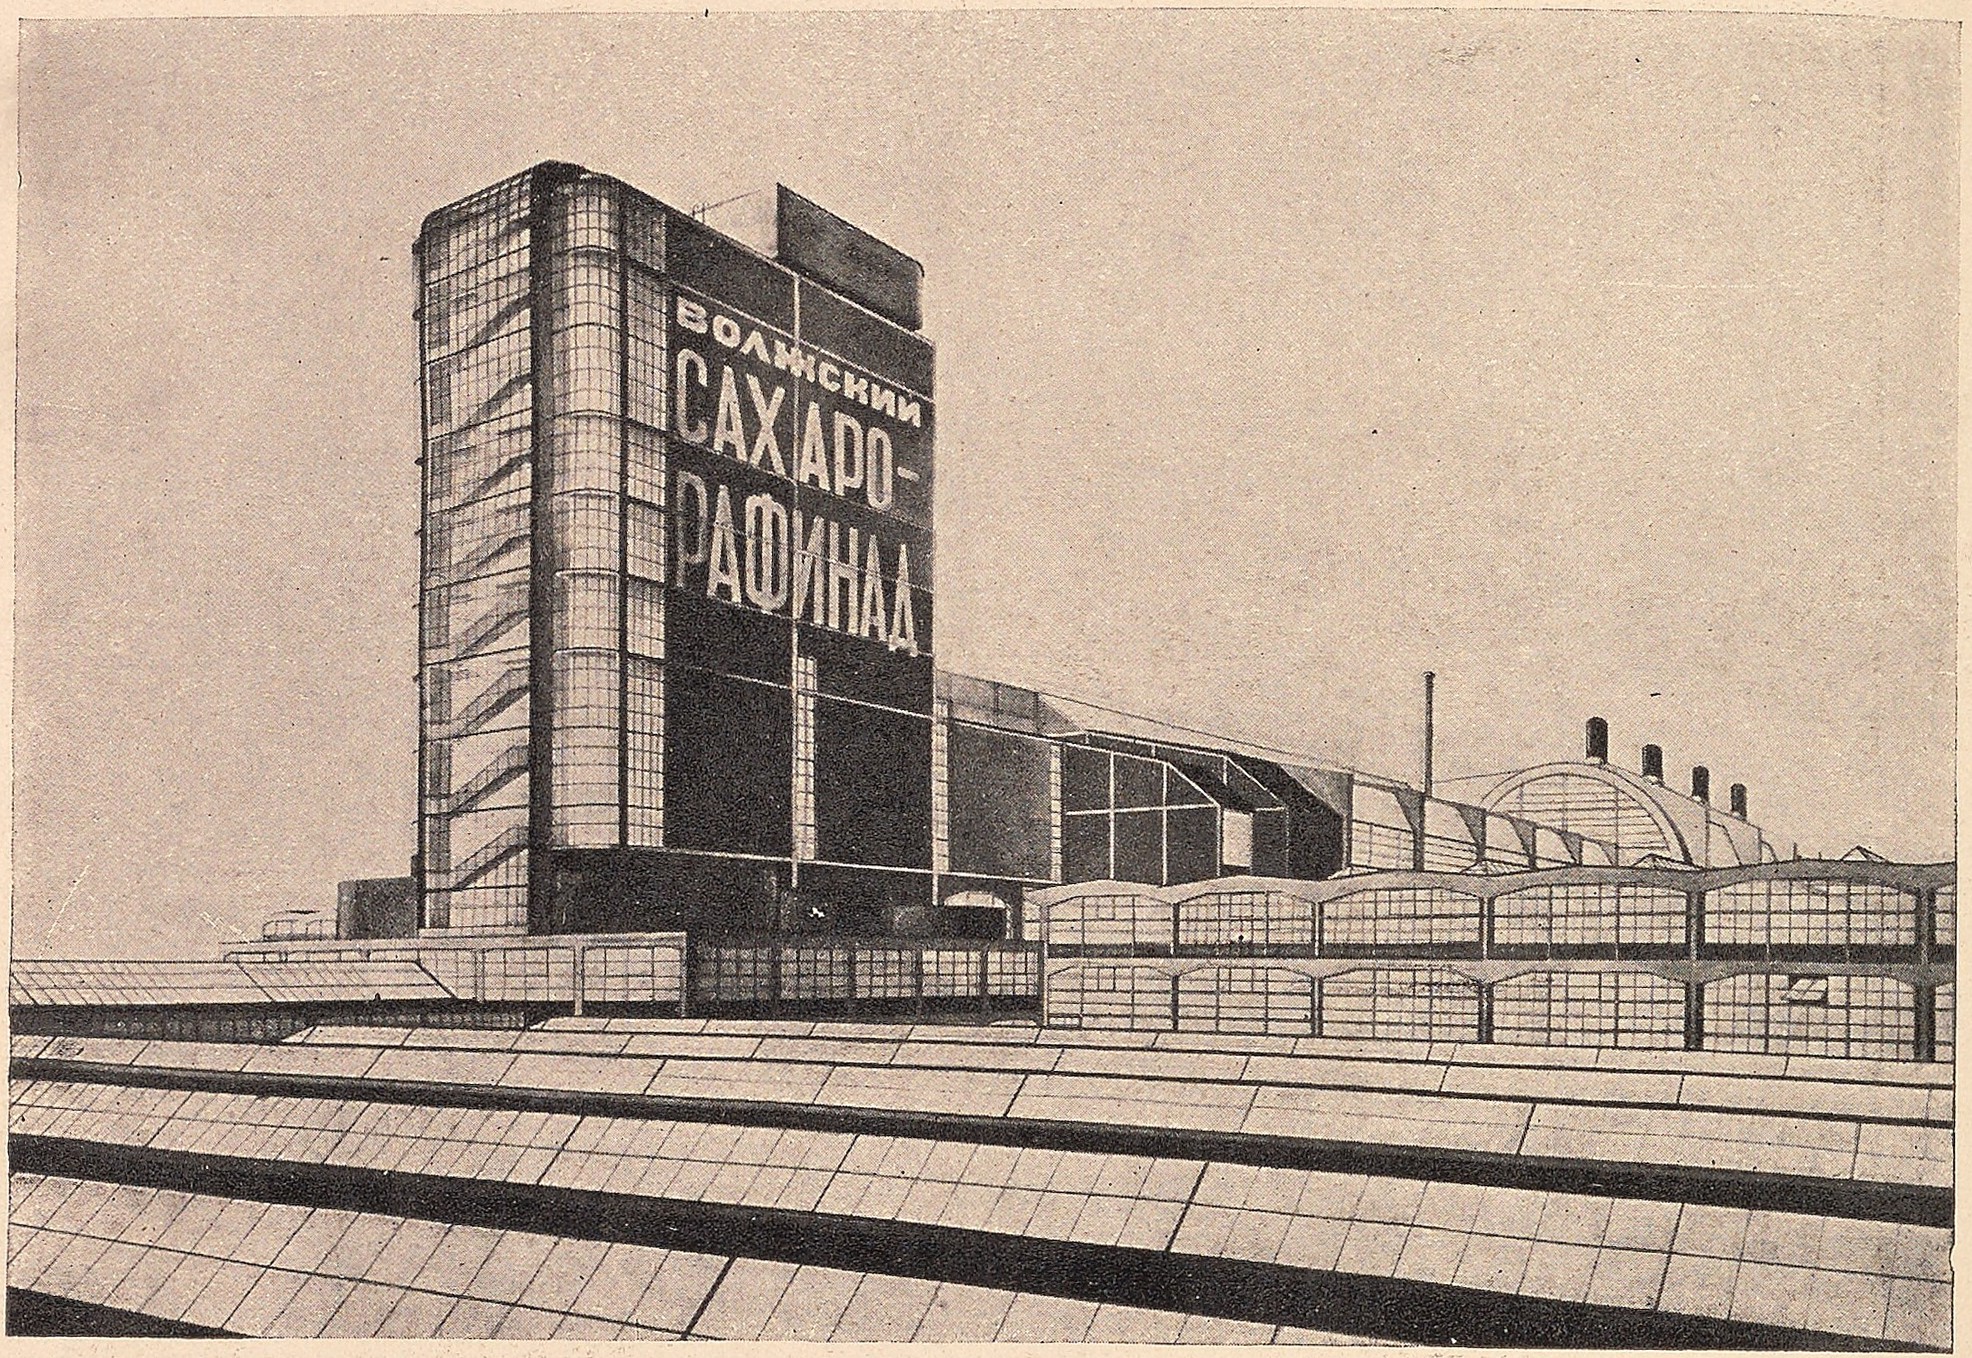 Сахаро-рафинадный завод. Работа студента В. А. Ершова, 1927 г. Руководитель профессор А. А. Веснин.